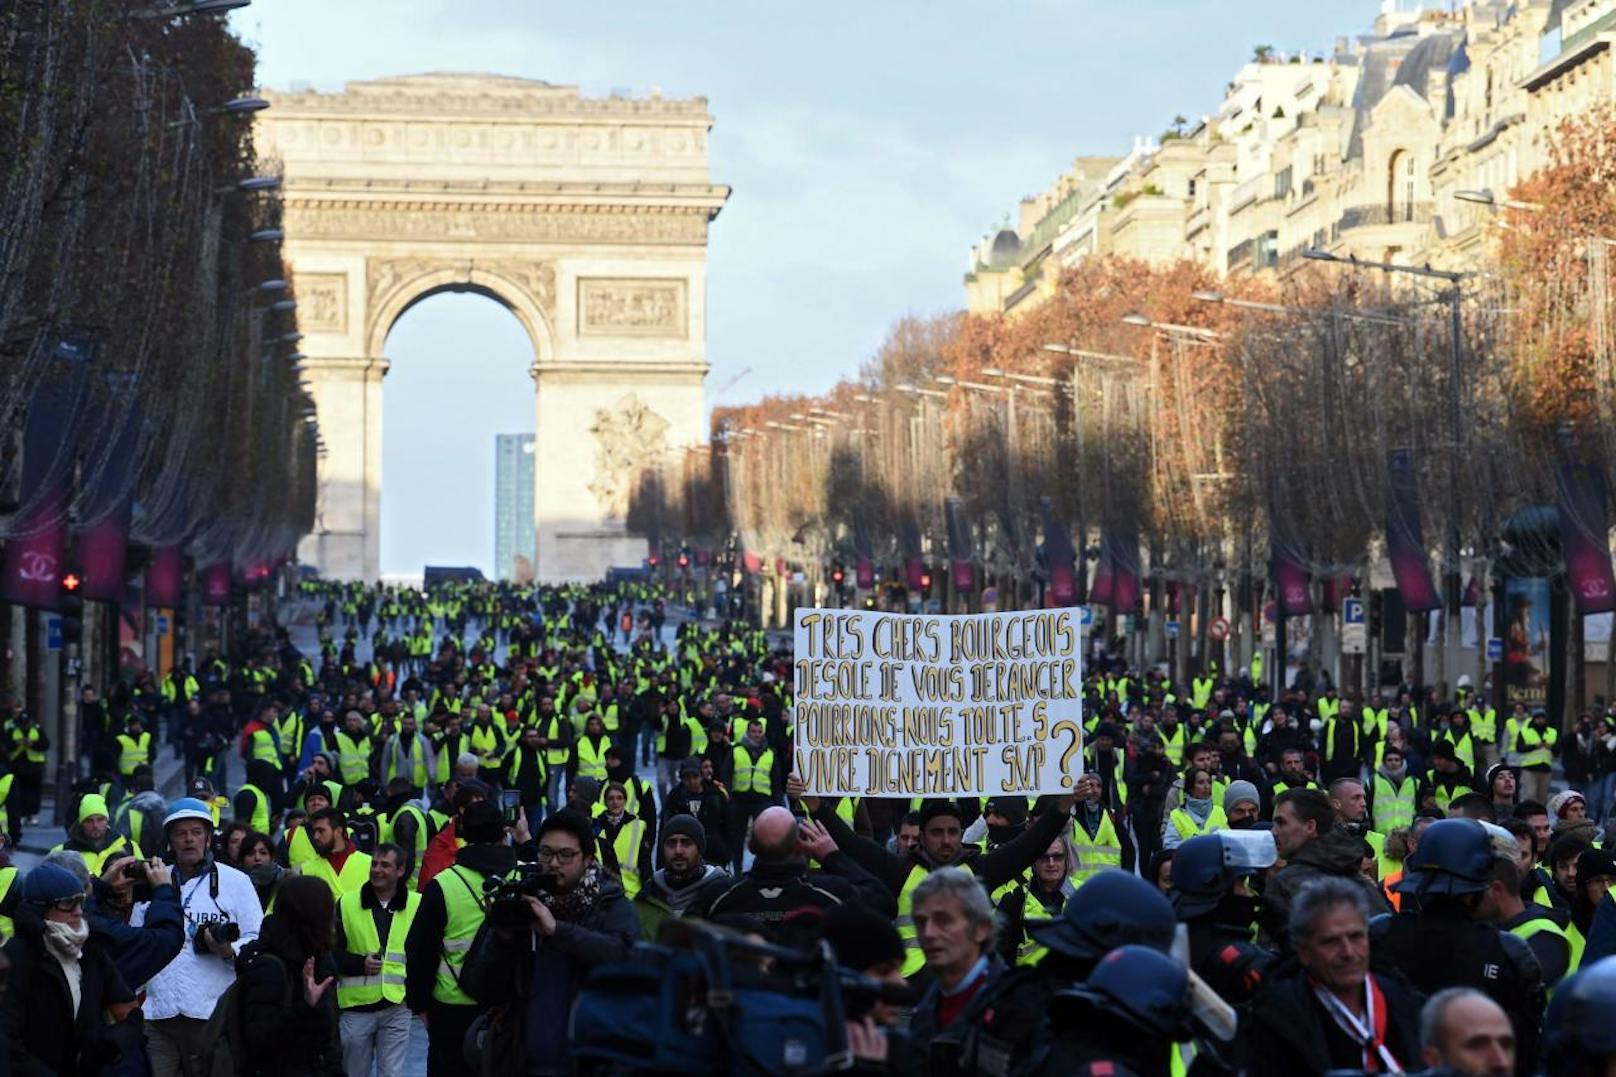 Am Wochenende wollen die "Gelbwesten" in Frankreich wieder aufmarschieren und demonstrieren. Die Behörden rechnen wieder mit Ausschreitungen und zeigen mit Zehntausenden Sicherheitskräften Präsenz.